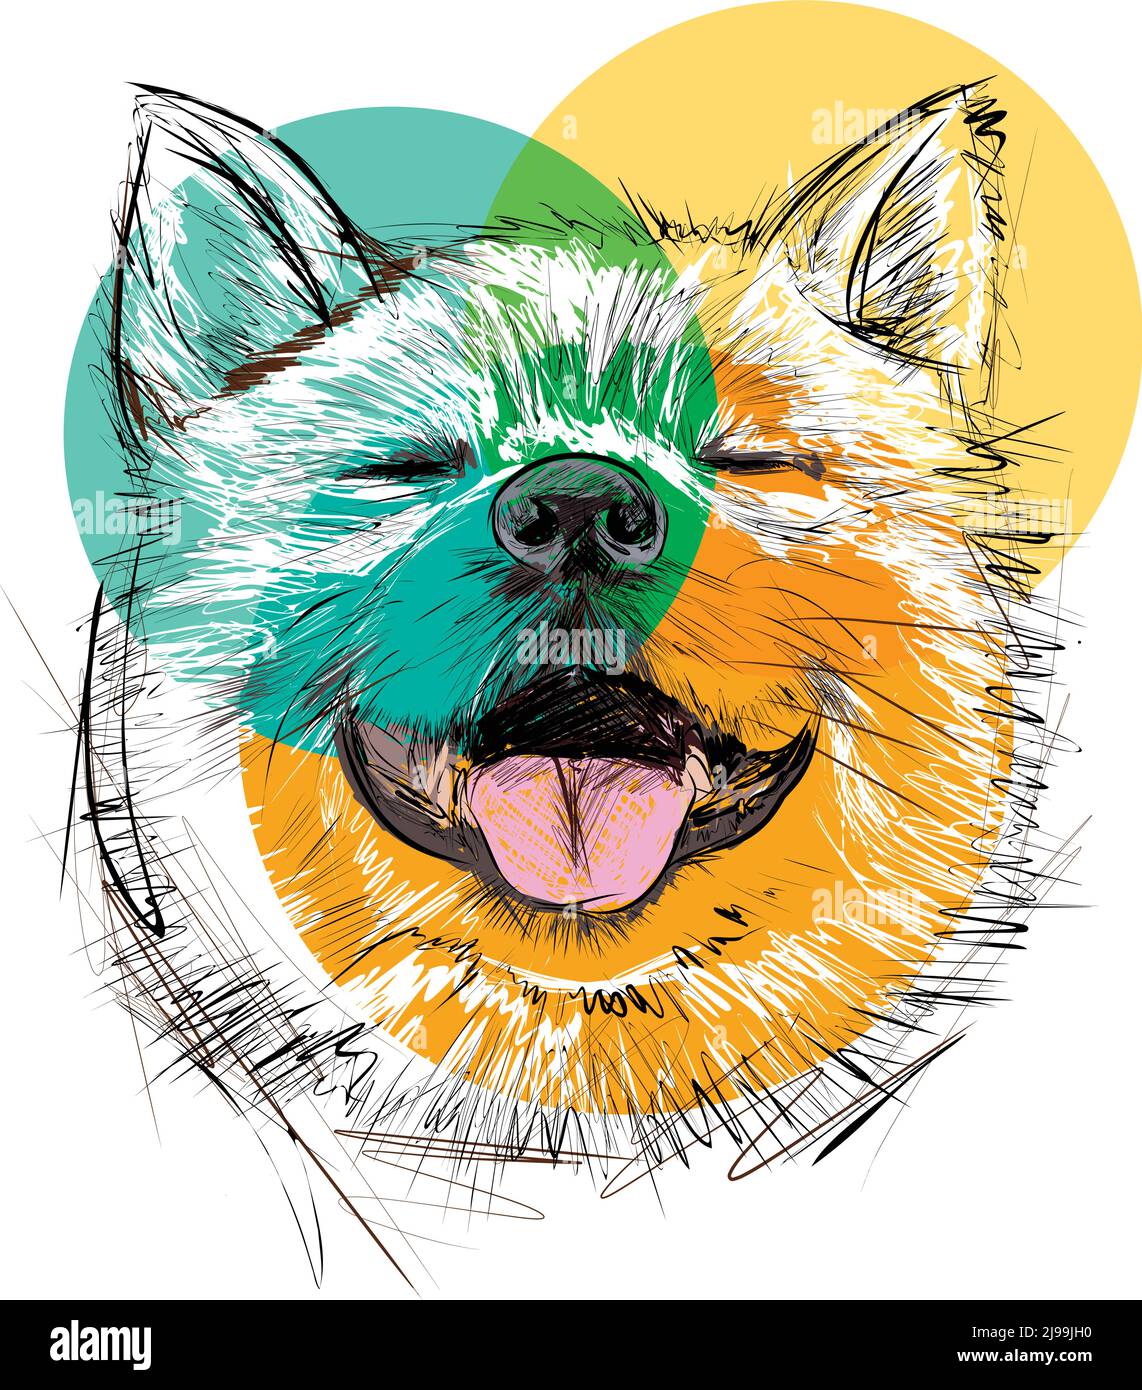 Illustrazione dei marcatori di schizzo disegnati a mano del cane Shiba Inu. Ritratto di сute animale domestico sorridente. Illustrazione vettoriale Illustrazione Vettoriale